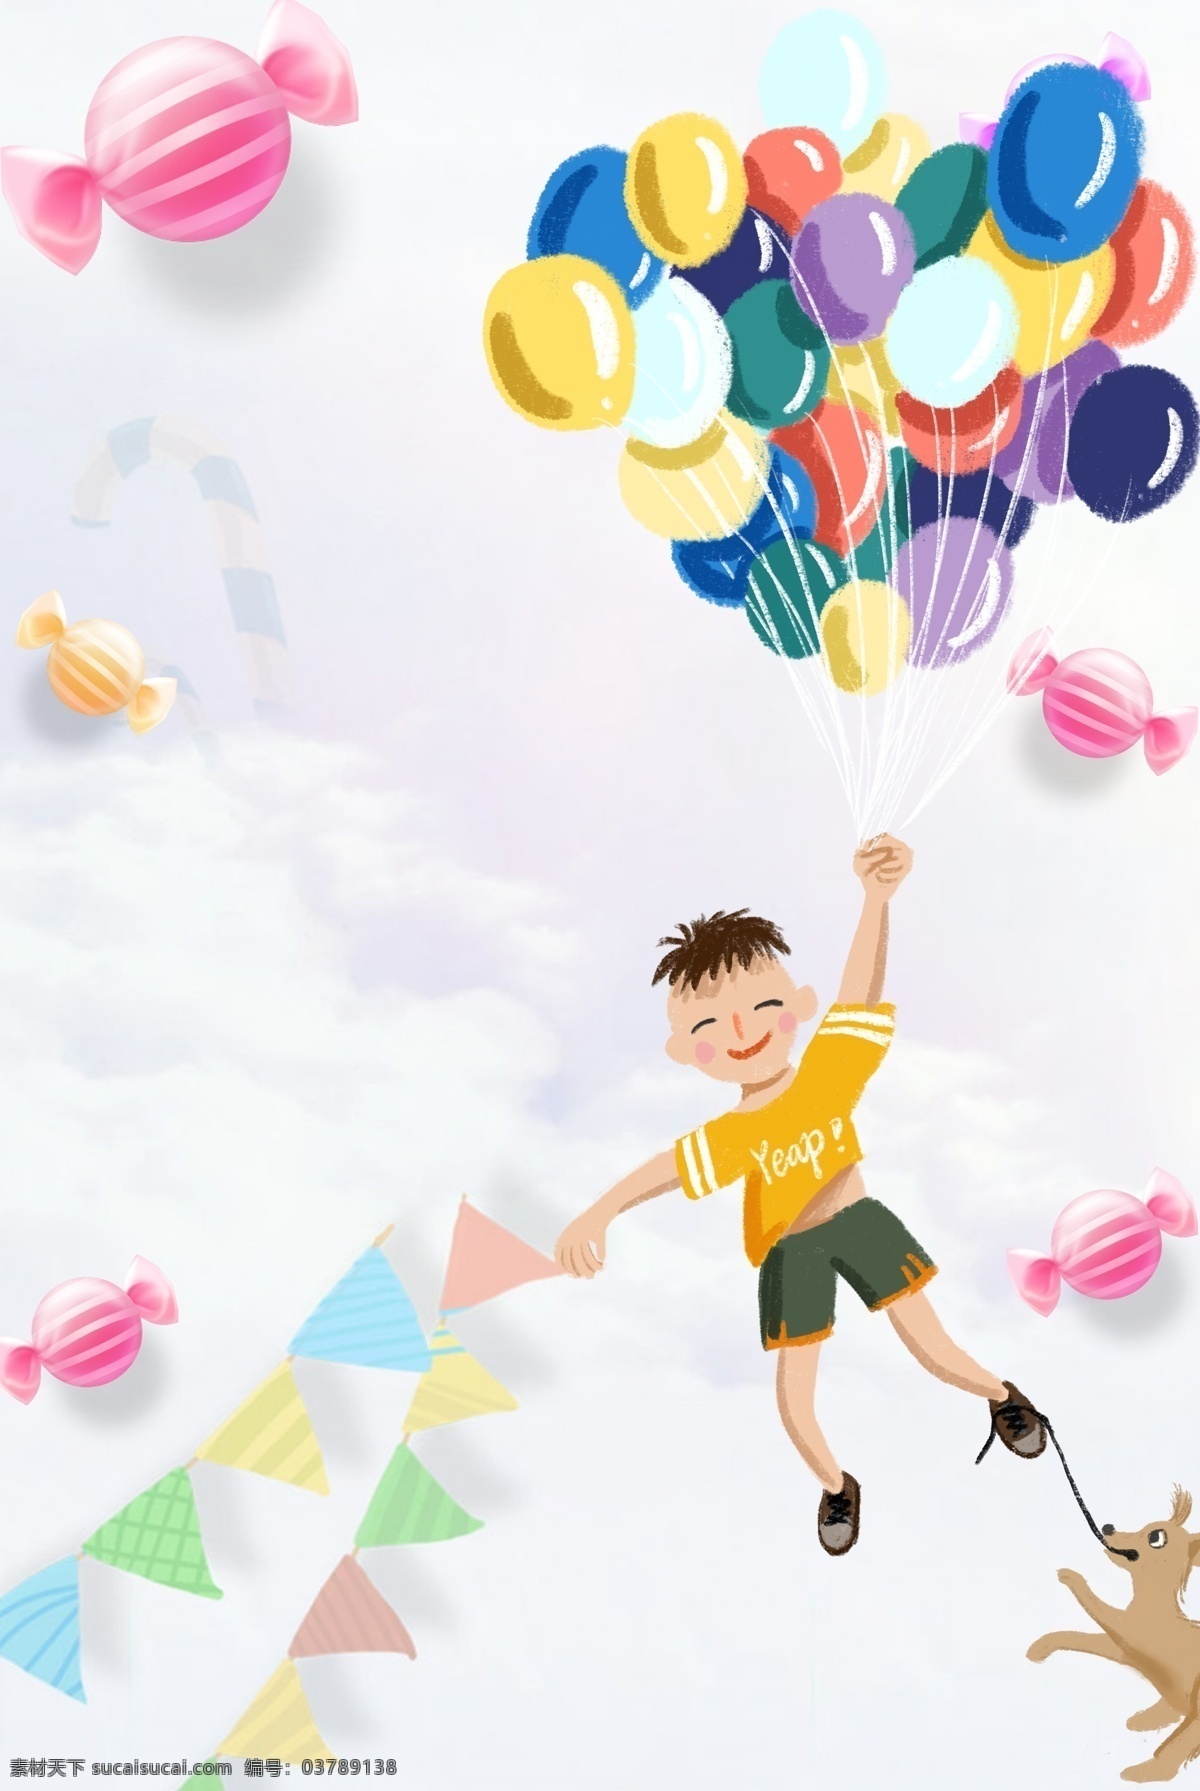 简单 六 一小 男孩 手 牵 气球 背景 61儿童节 儿童节 六一 疯狂61 开学季 促销 活动 儿童 国际儿童节 儿童节快乐 欢度六一